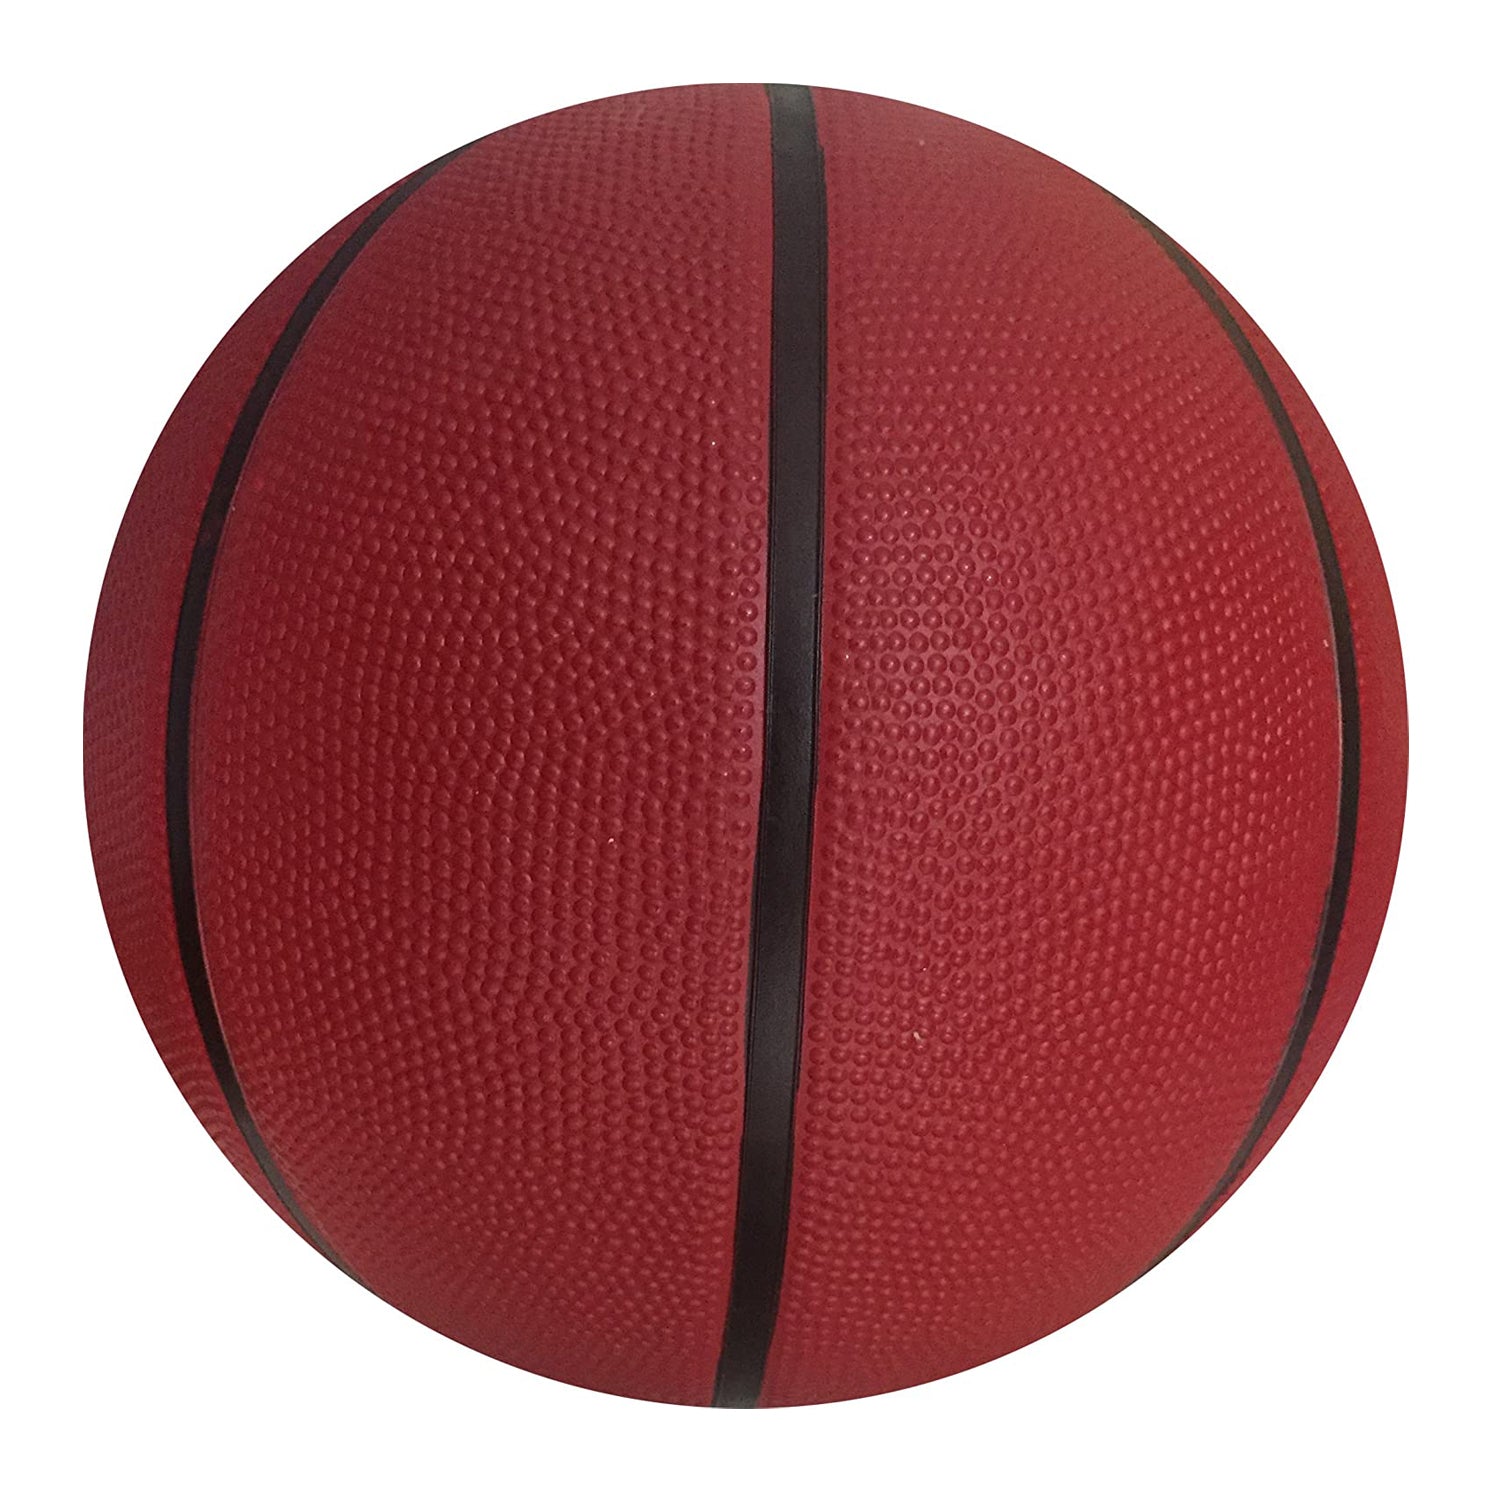 HRS Gripper High Grip Basketball, Size 7 - Best Price online Prokicksports.com